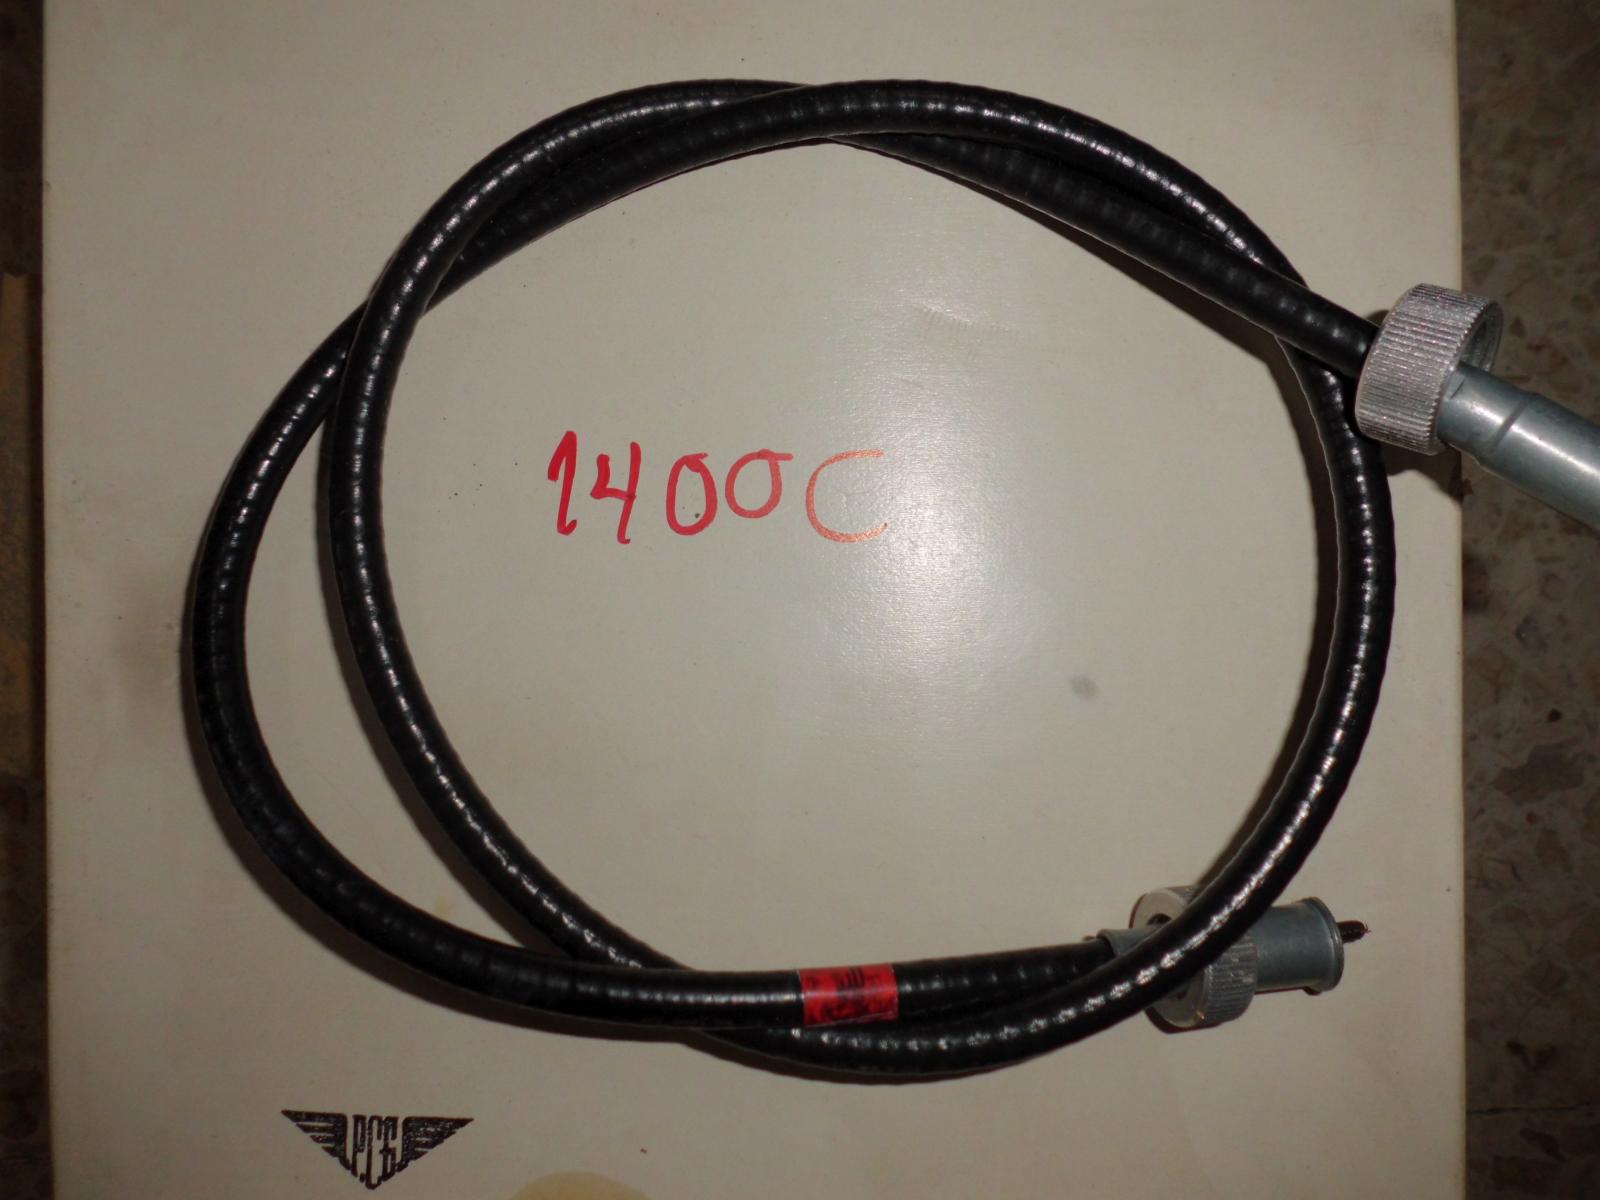 Cable cuentakilómetros del Seat 1400C 